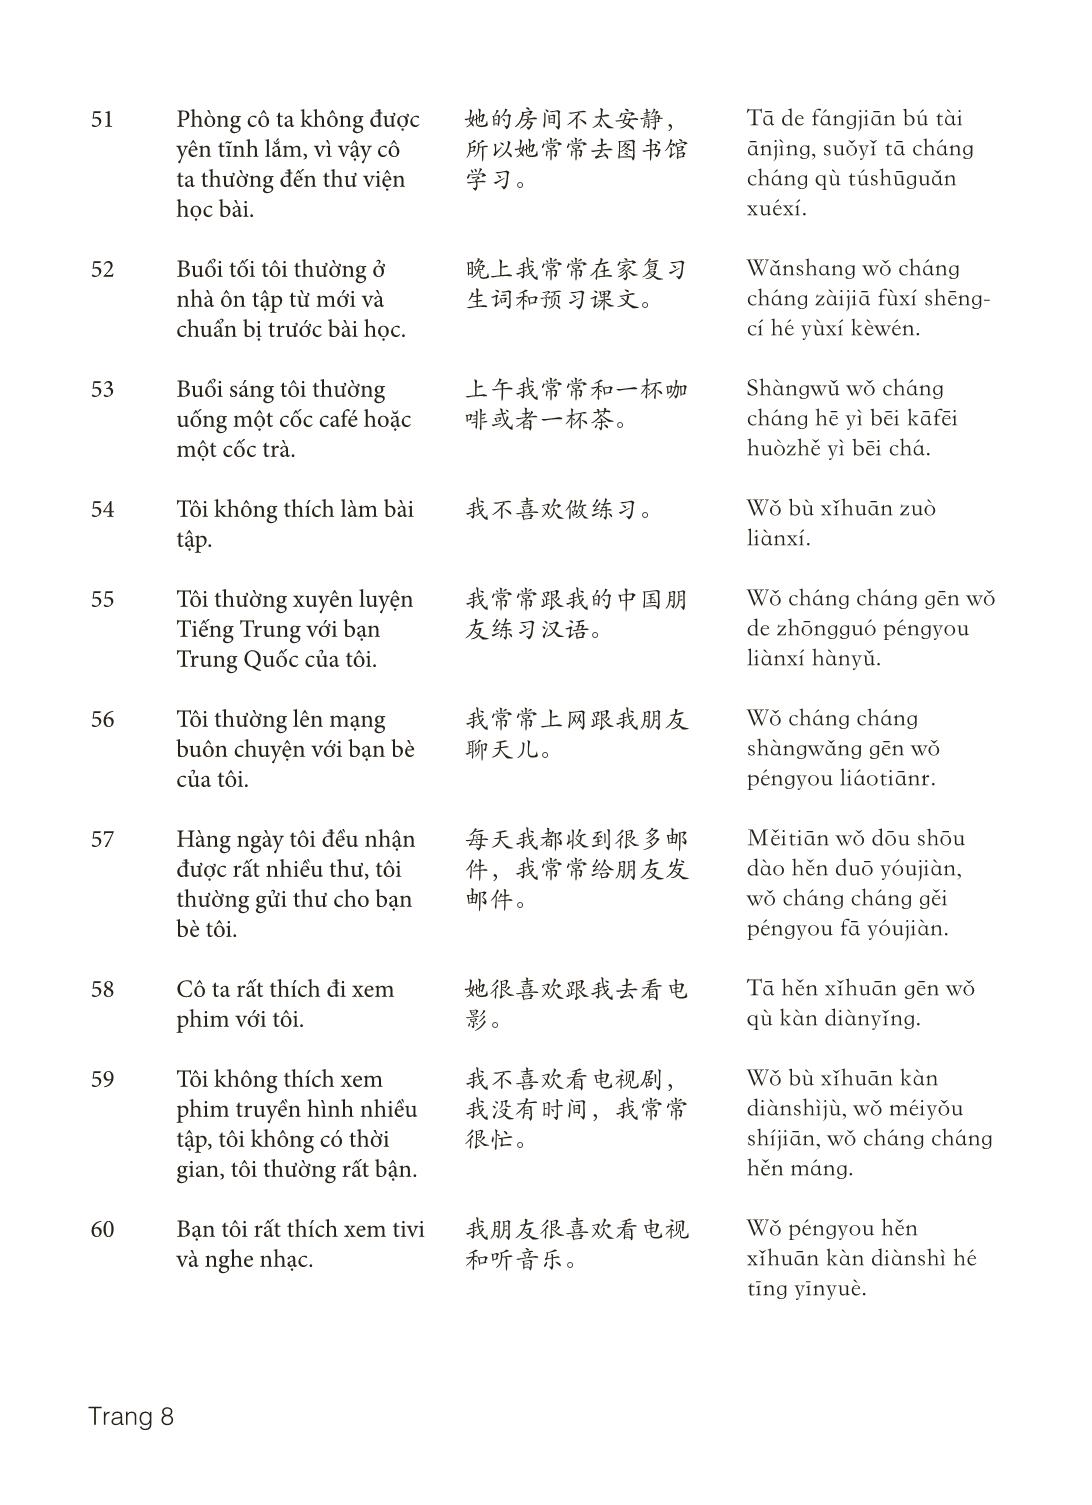 3000 Câu đàm thoại tiếng Hoa - Phần 30 trang 8